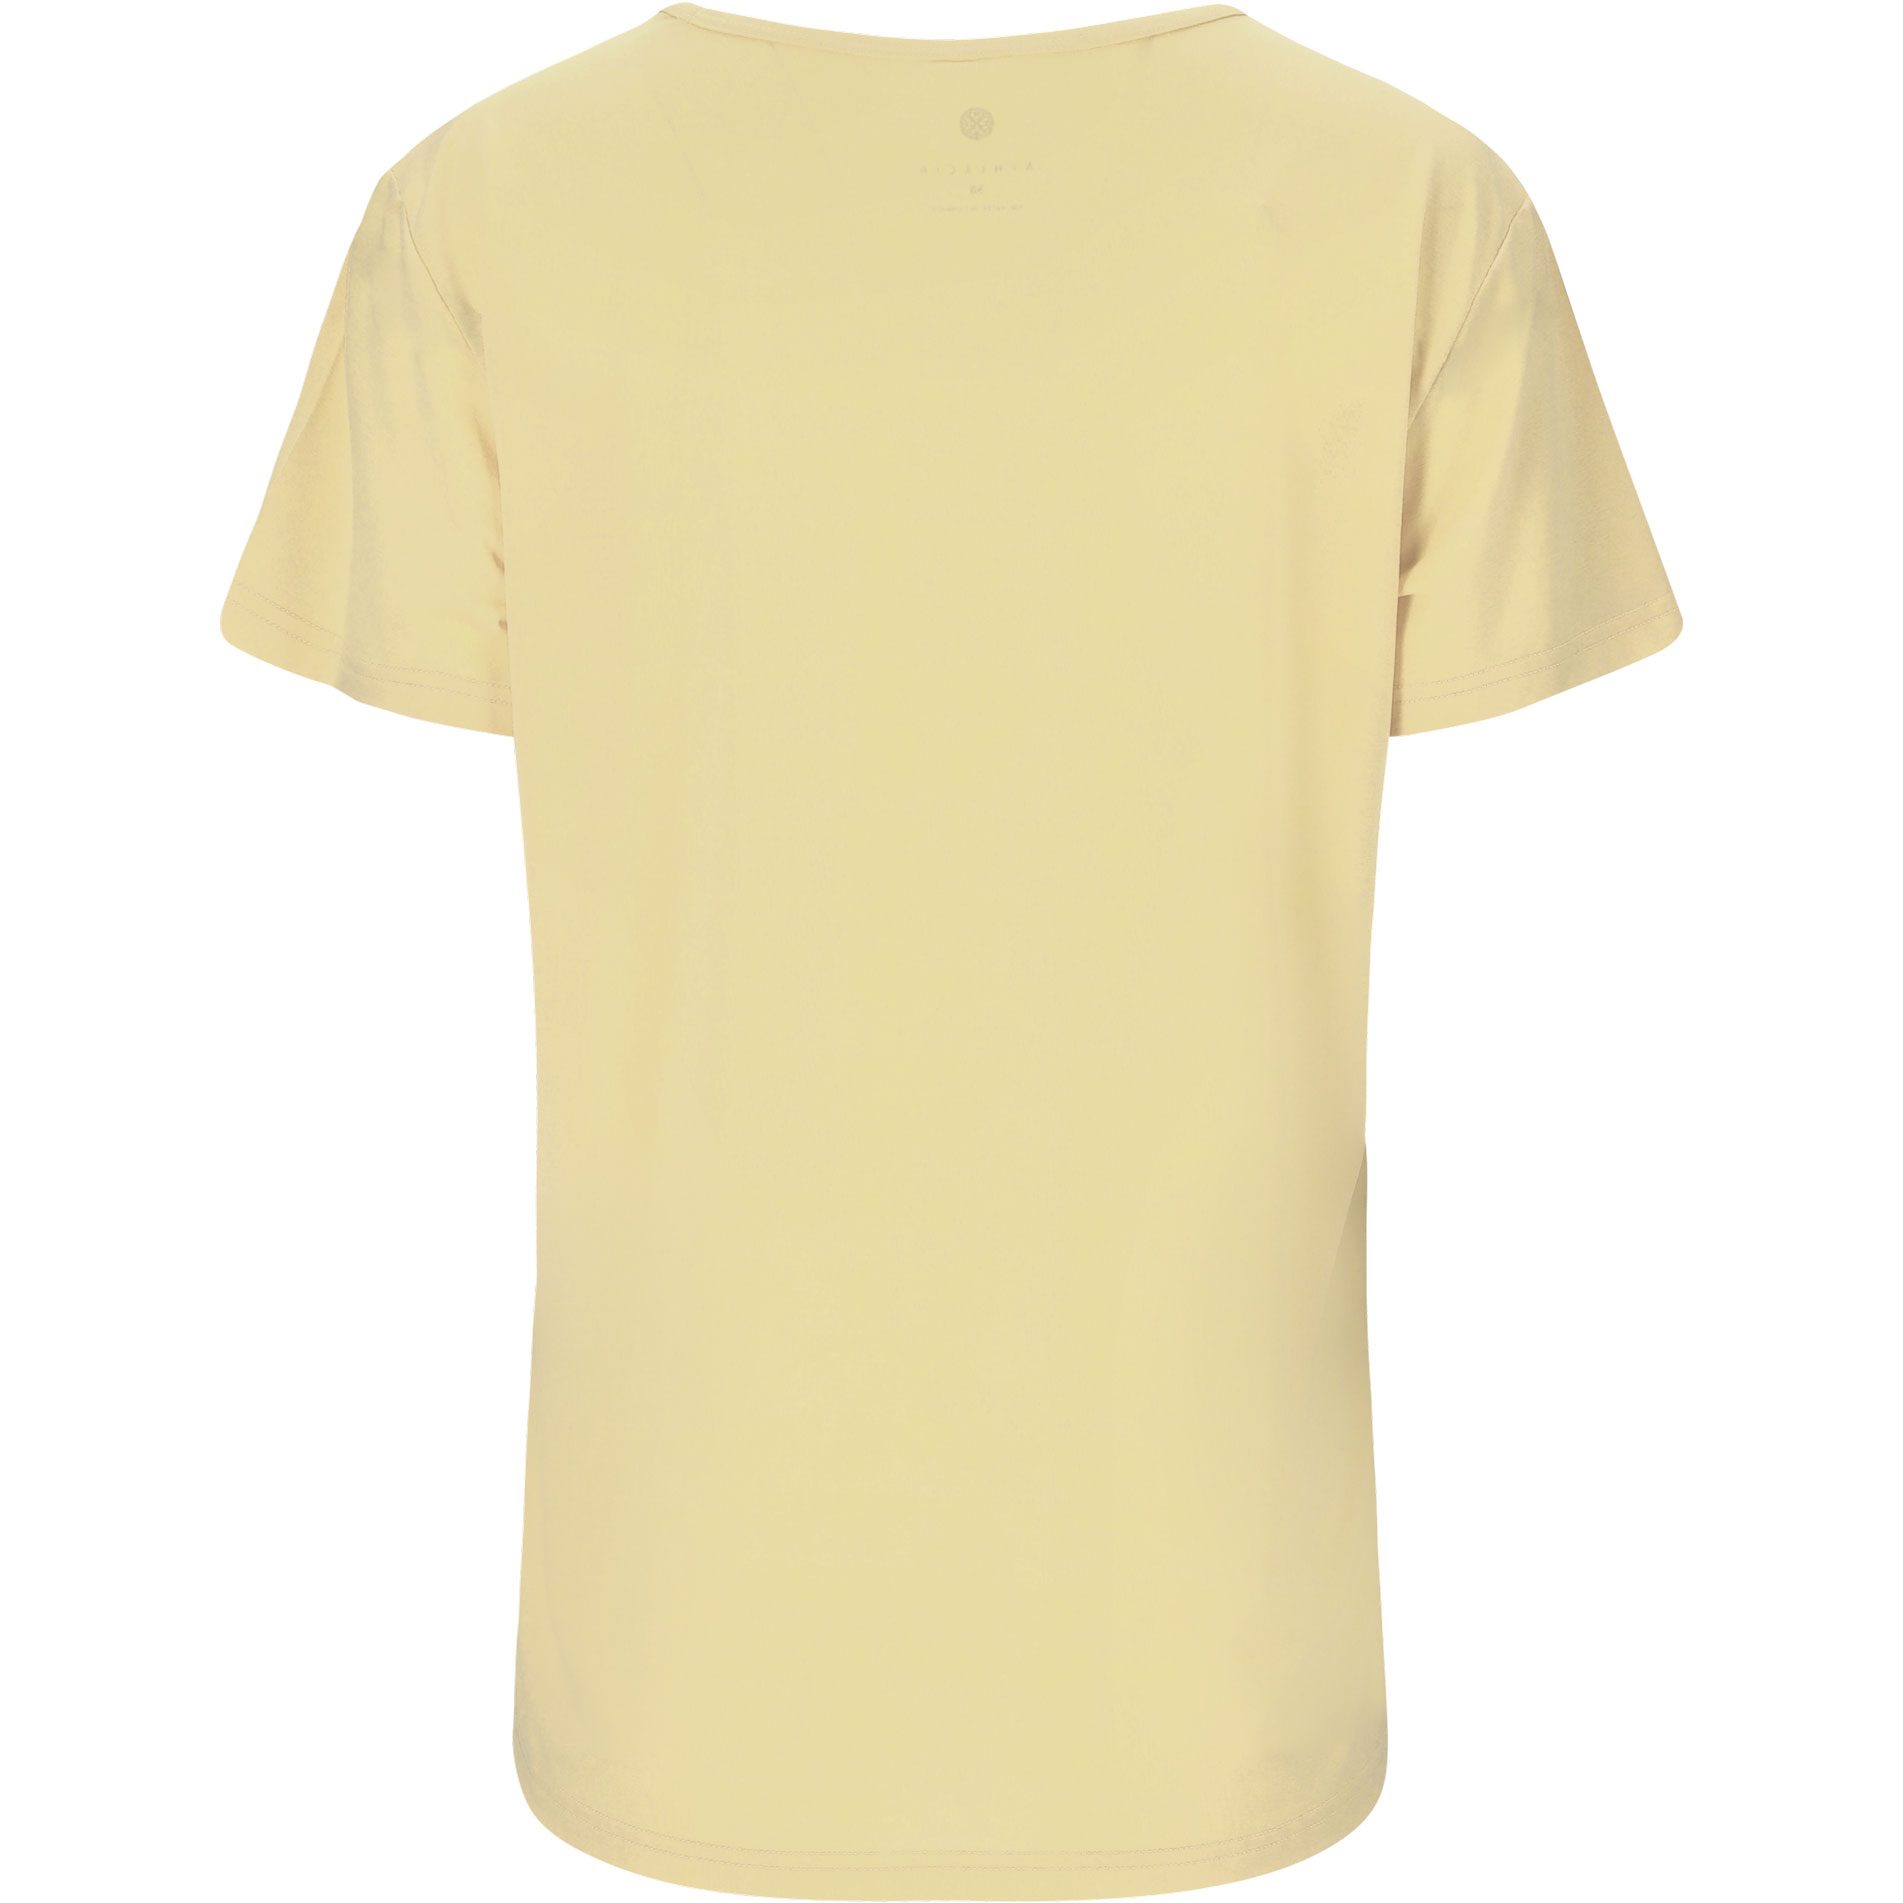 Athlecia - Lizzy W kaufen Damen Bittl im Slub Sport Shop lemon T-Shirt icing